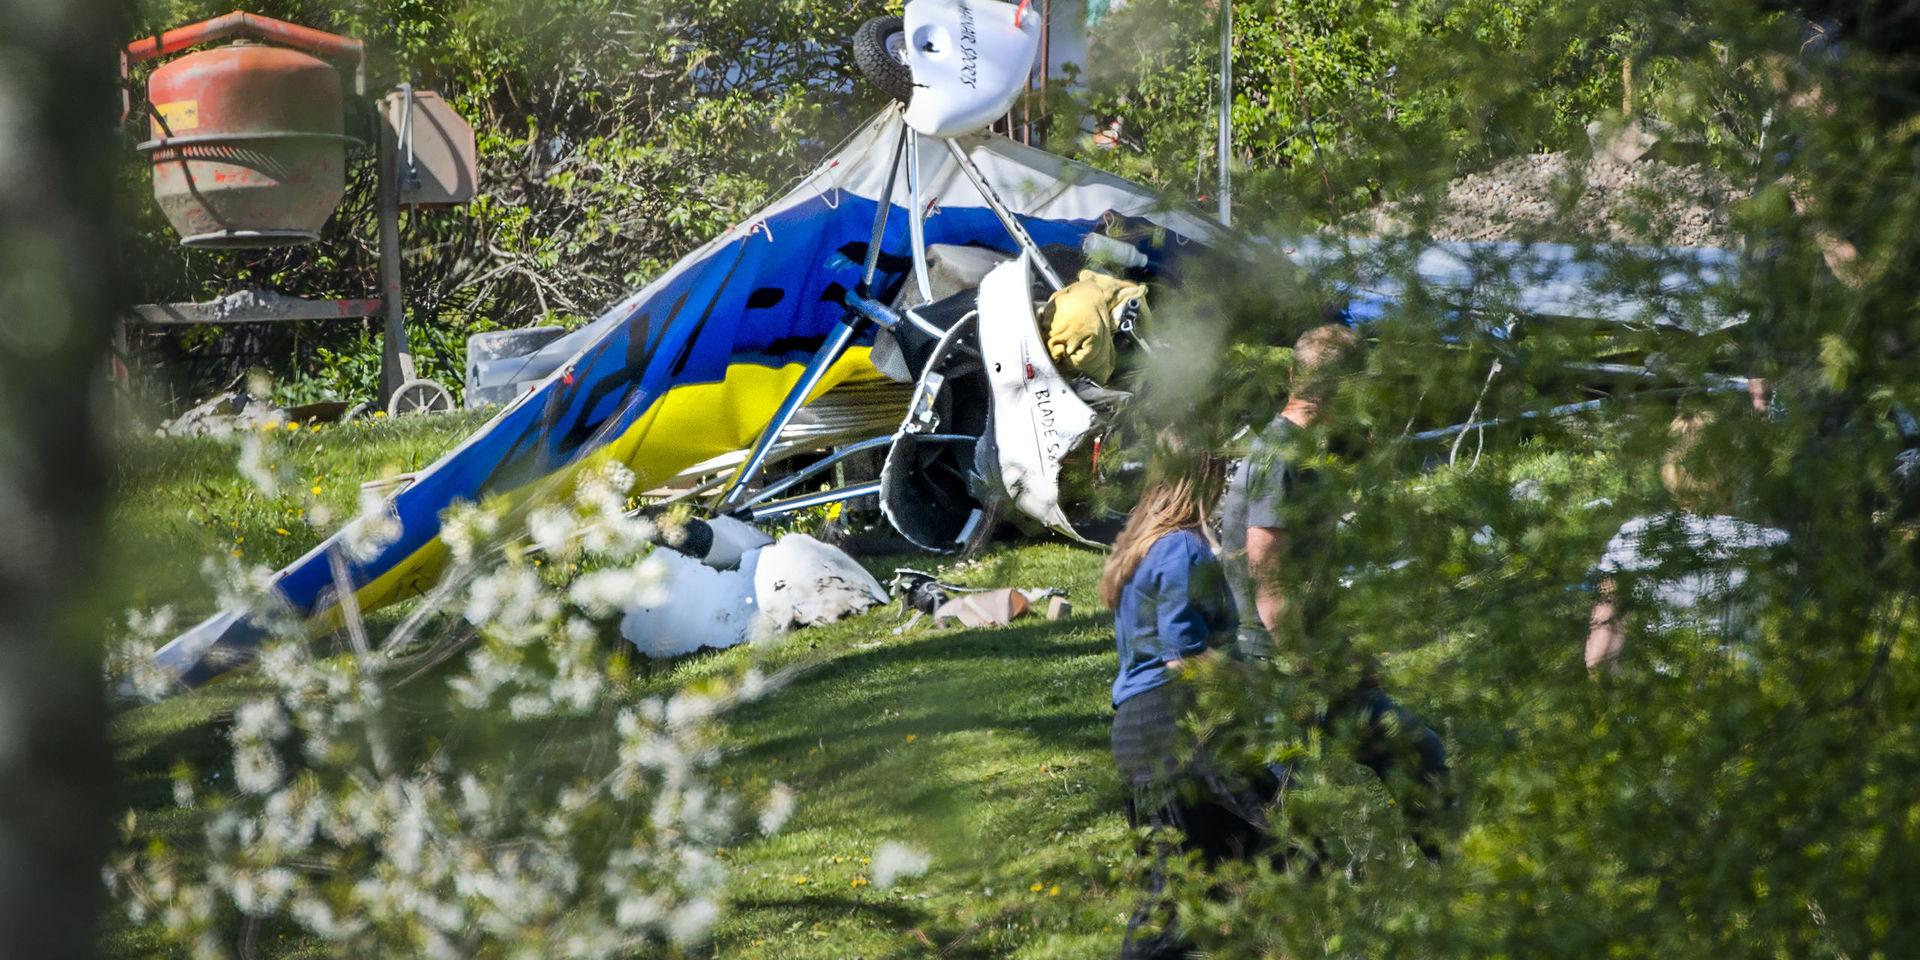 En ultralätt flygfarkost kraschade i en villaträdgård i Tyresö utanför Stockholm. En person har förts till sjukhus.